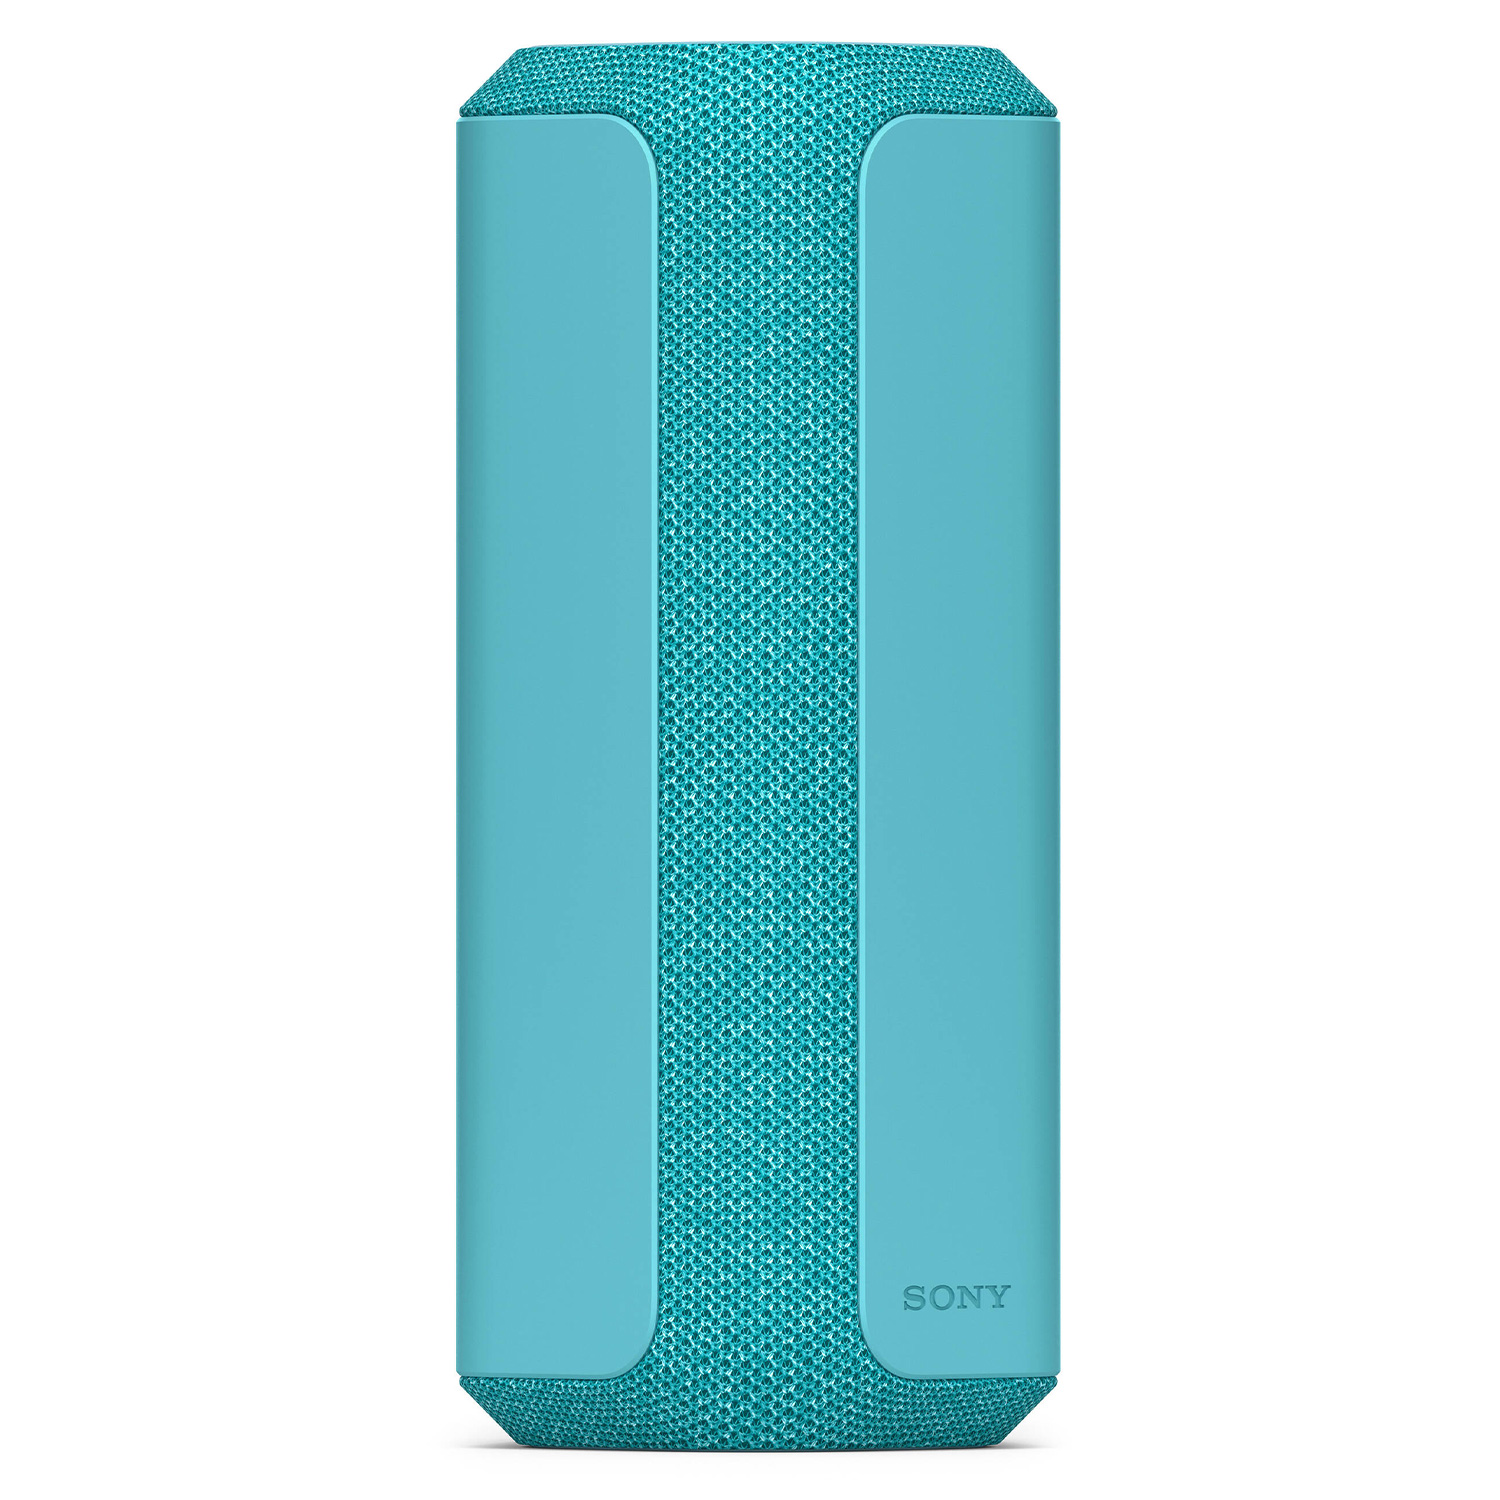 Caixa de Som Sony Portátil SRS-XE300 / Bluetooth - Azul